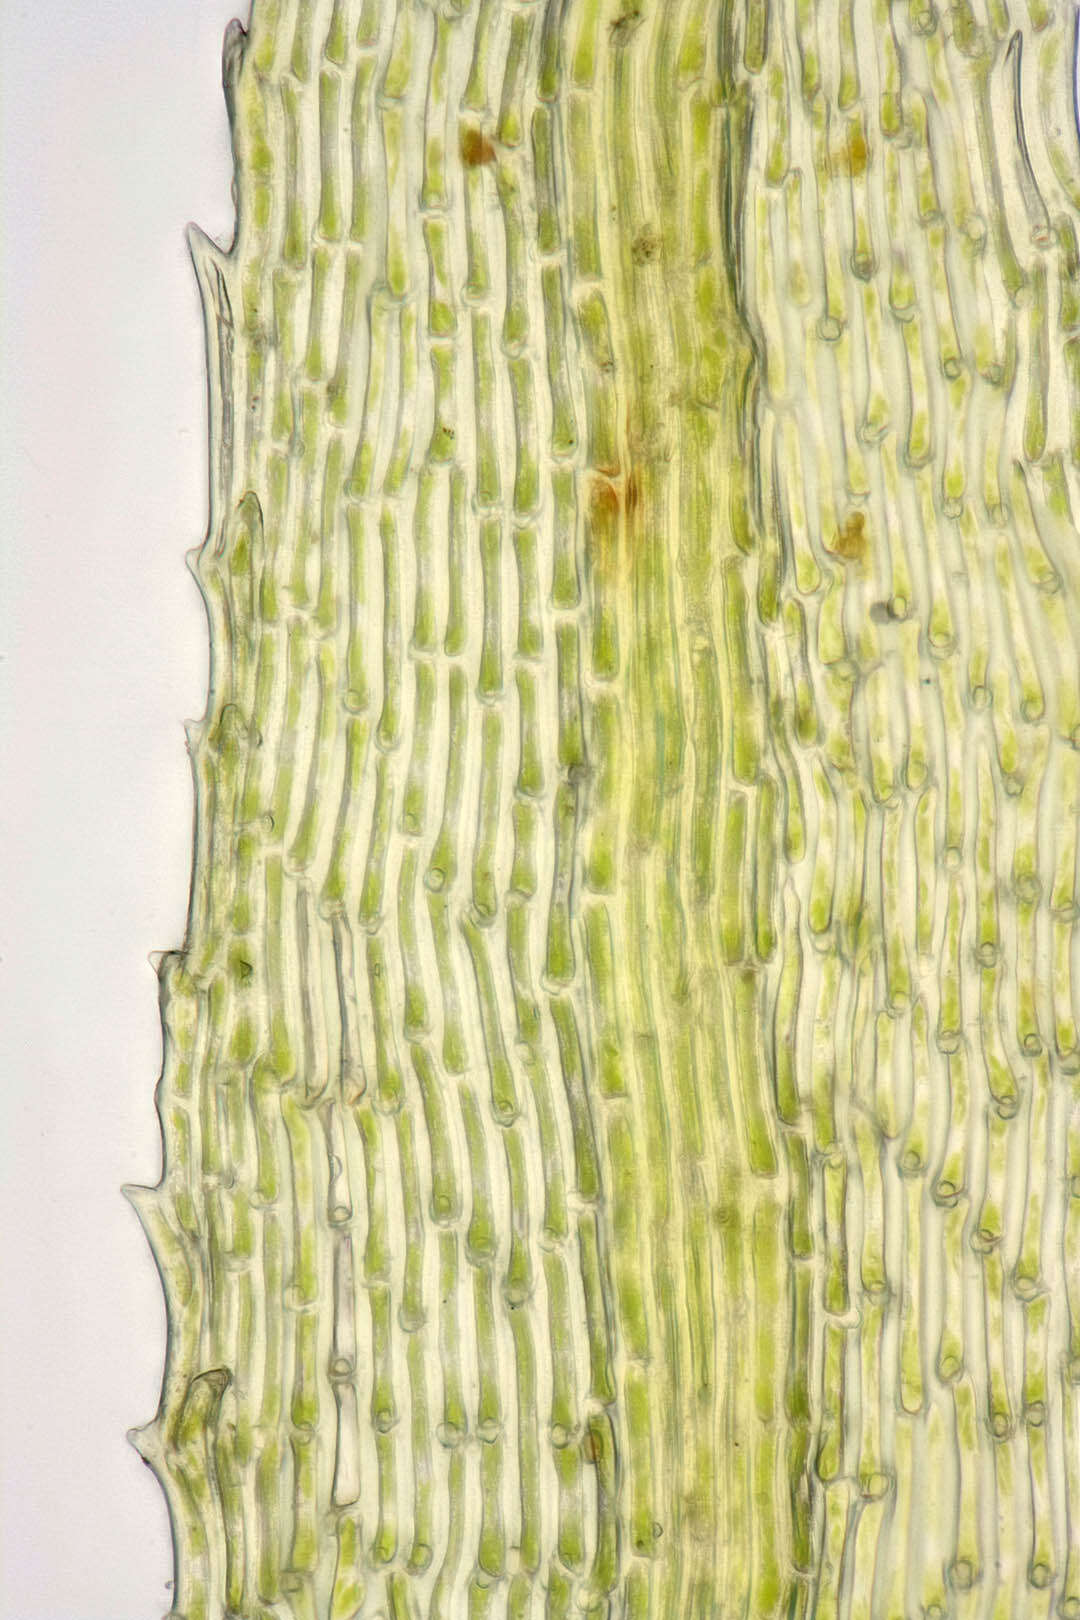 Image of golden-head moss